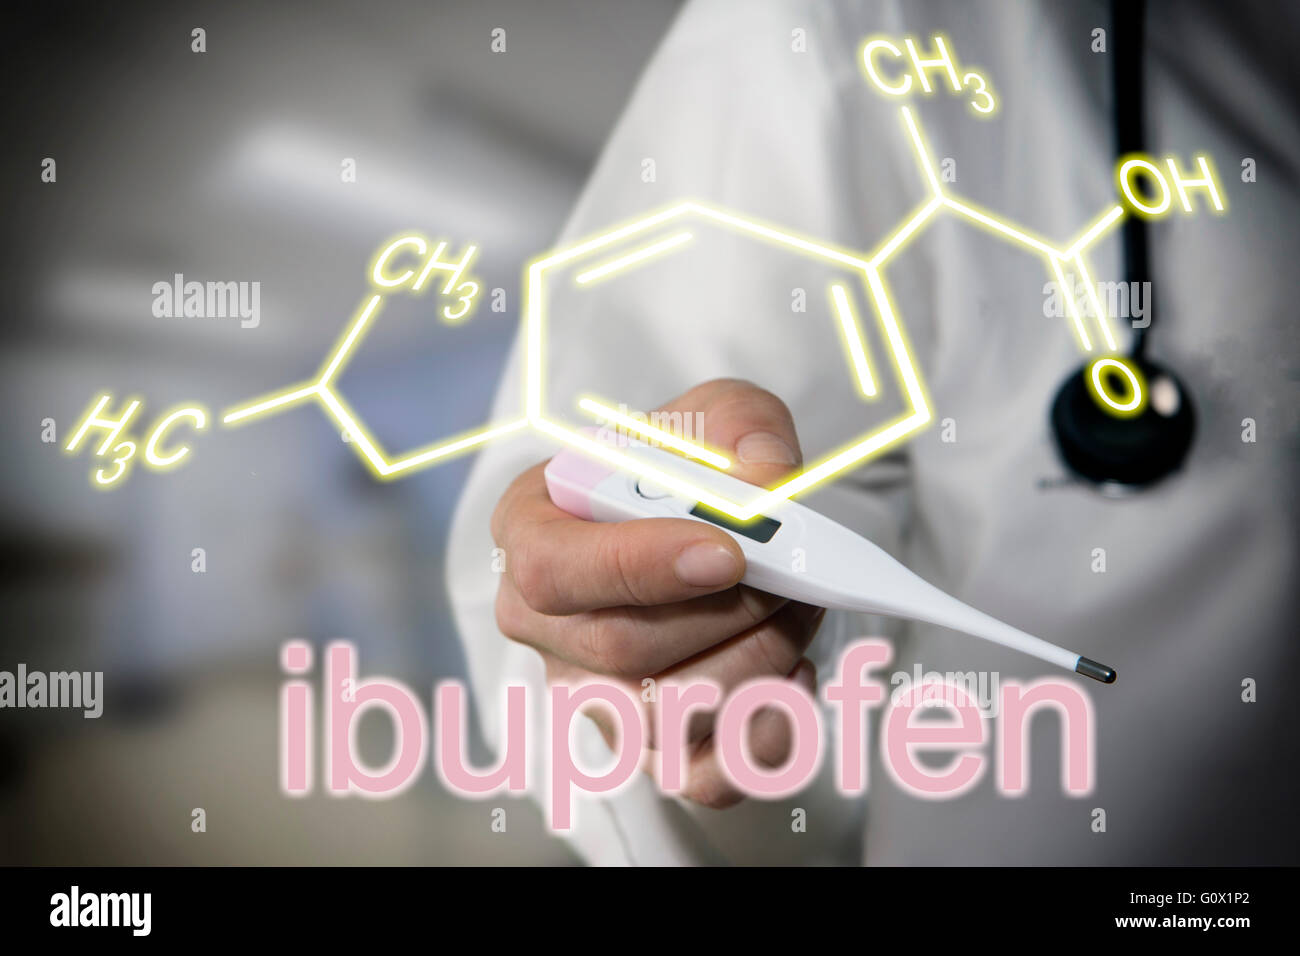 Medico tenendo termometro, la formula chimica di ibuprofen Foto Stock